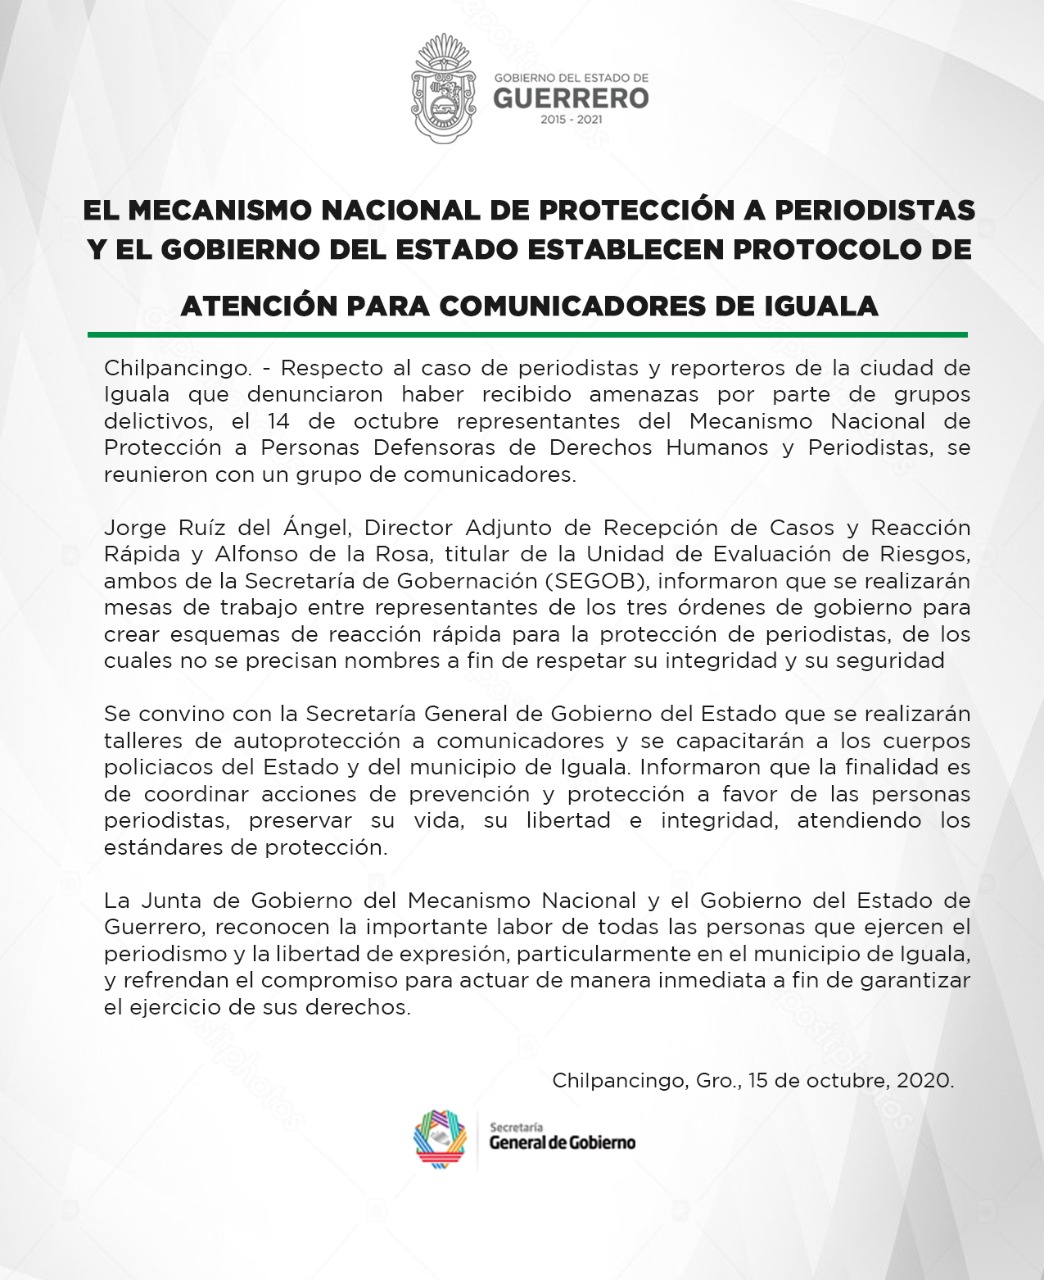 El Mecanismo Nacional y Gobierno de Guerrero establecen protocolo de atención para comunicadores de Iguala